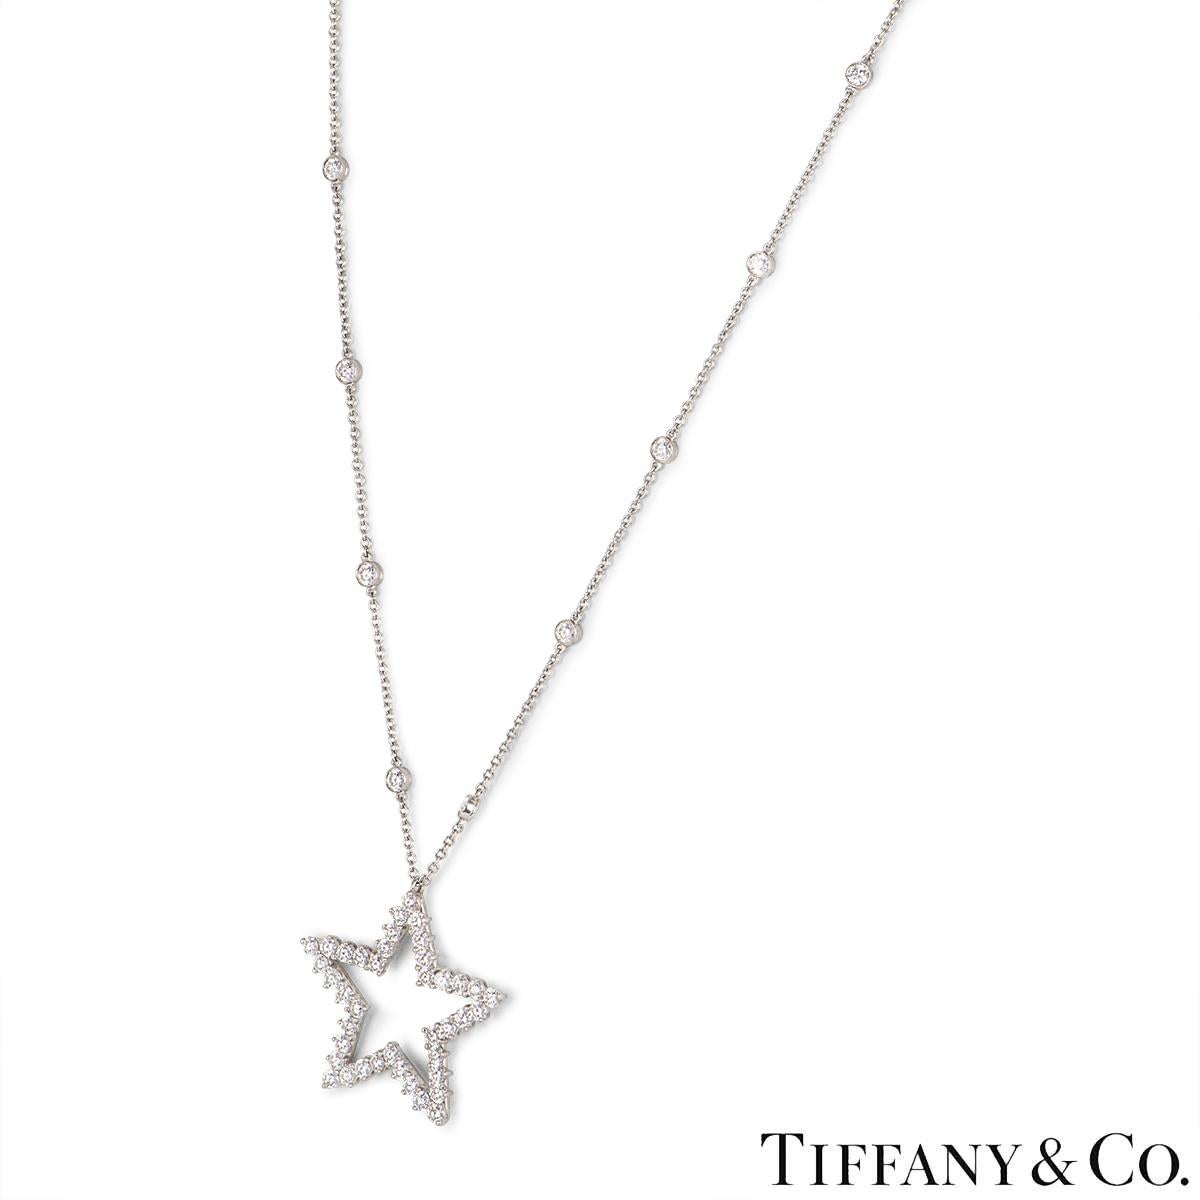 Un magnifique collier pendentif étoile en platine et diamants de Tiffany & Co. de la collection Diamonds By The Yard. Le pendentif présente un motif d'étoile ouverte serti de 40 diamants ronds de taille brillant d'un poids approximatif de 3,20